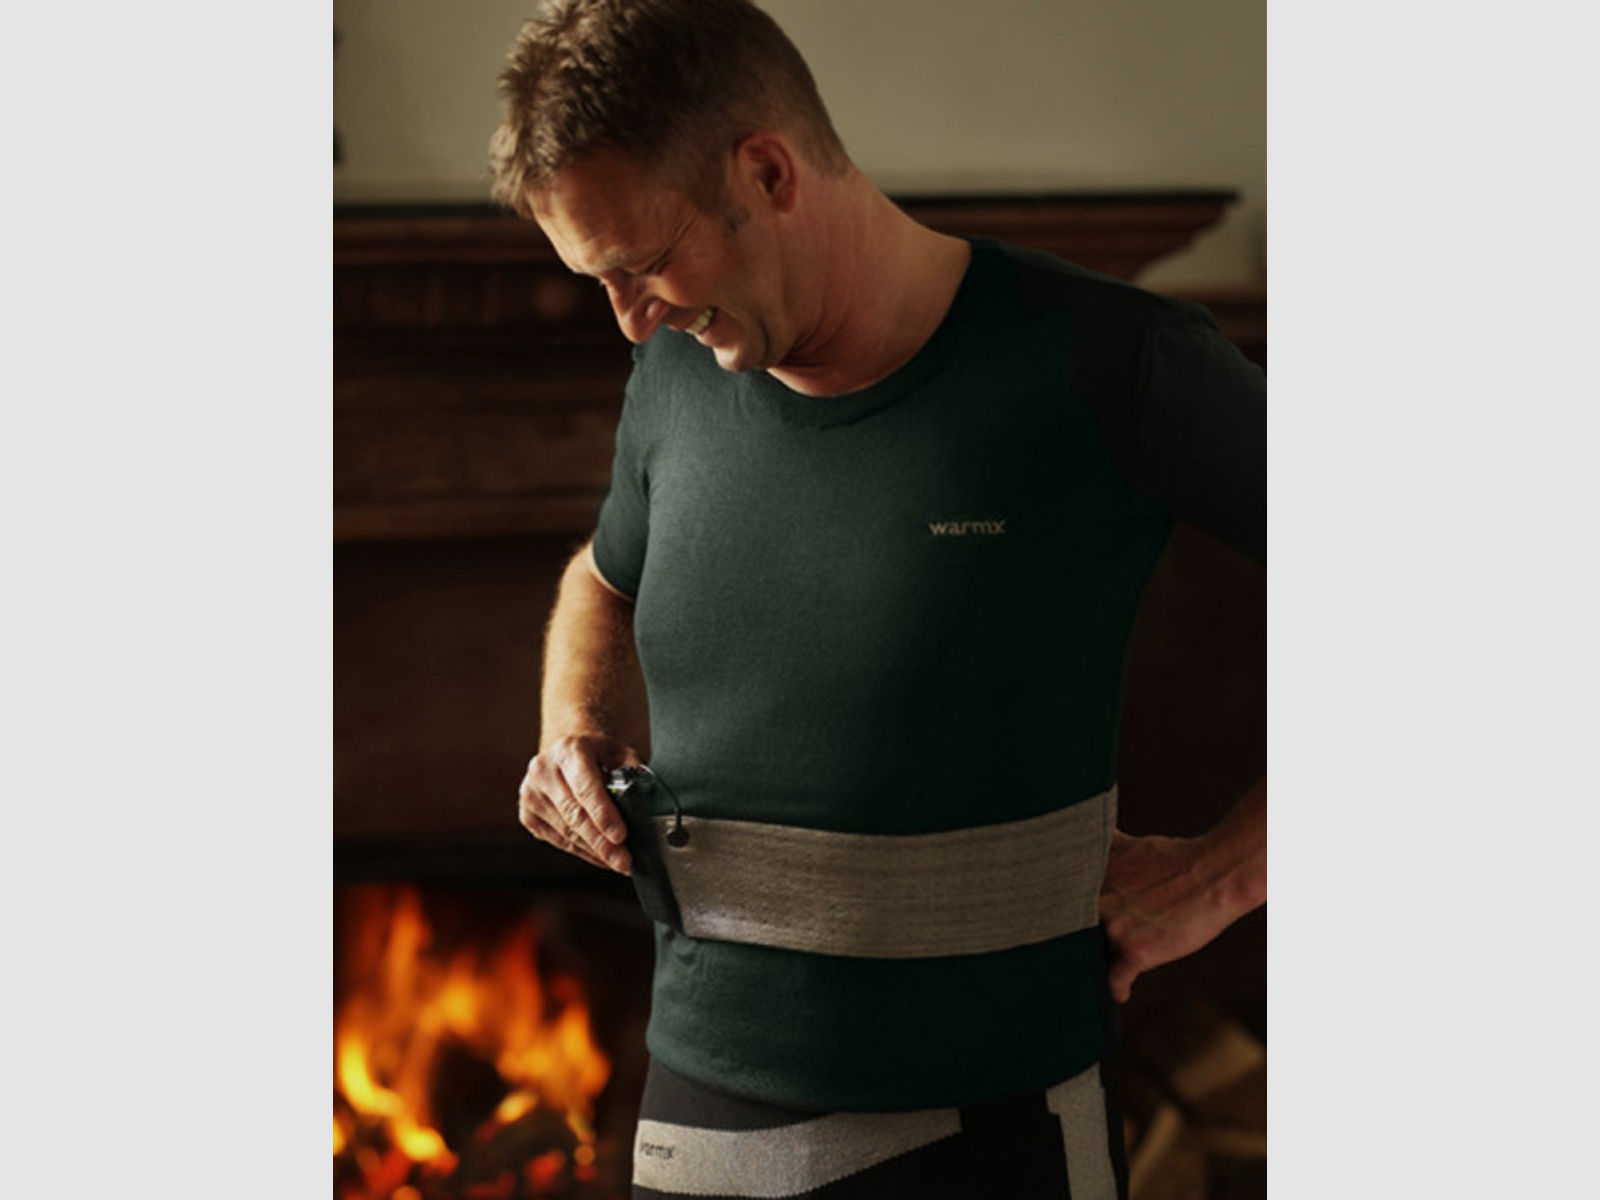 WarmX Undershirt 1/4-Arm beheizbares Unterhemd Funktionsunterwäsche Unterwäsche Herren Schwarz 54 Ba